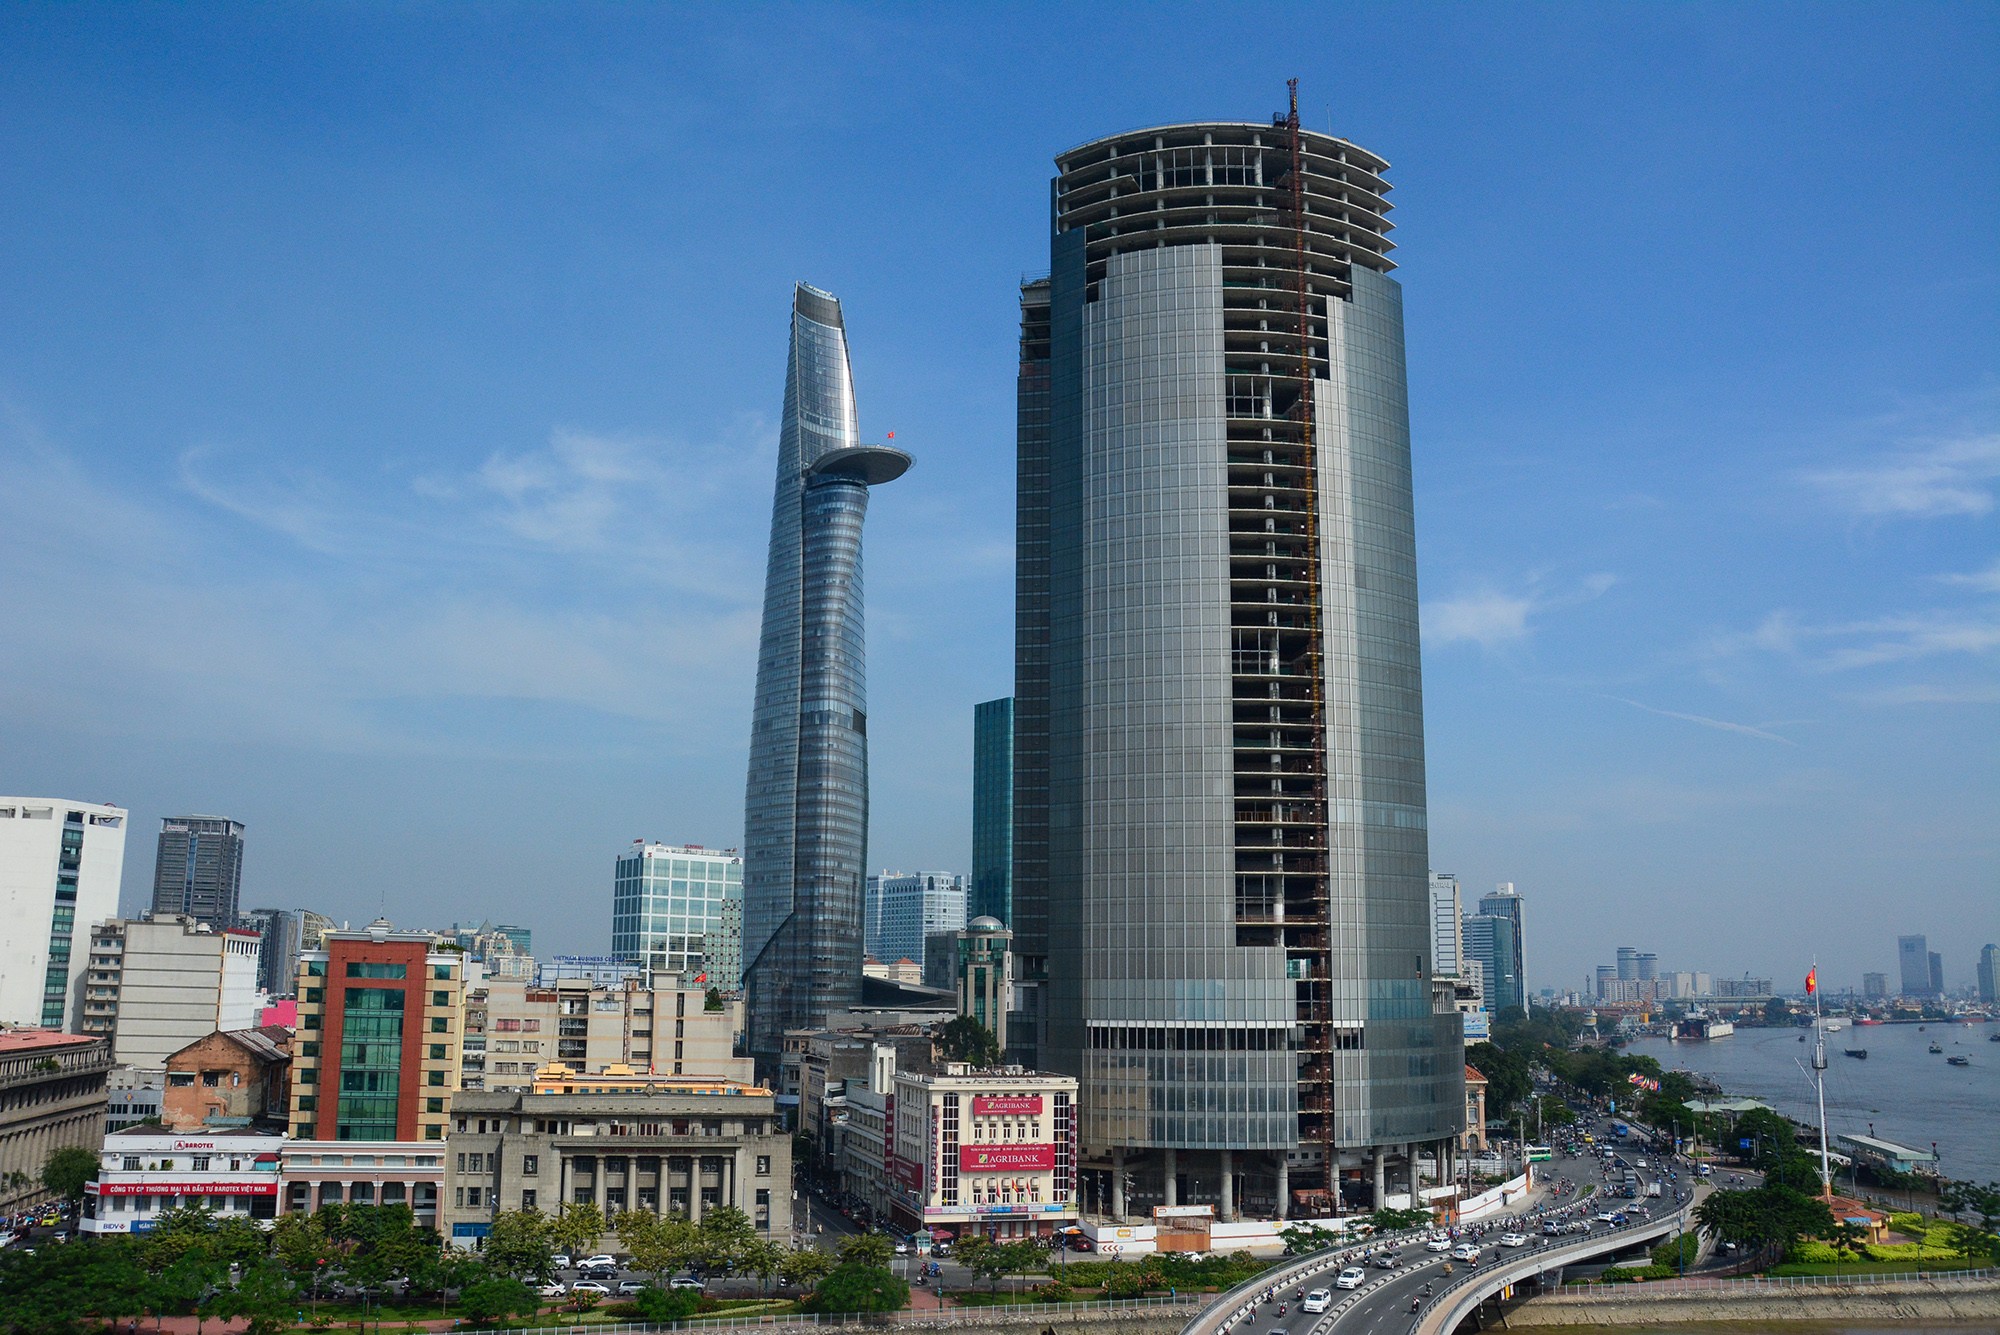 Nằm trên khu đất "vàng" rộng hơn 6.600m2 tại góc đường Hàm Nghi – Tôn Đức Thắng – Võ Văn Kiệt (quận 1), Saigon One Tower (tên cũ là Saigon M&amp;C Tower) là dự án có vị trí đắc địa ở TP.HCM. Công trình được khởi công năm 2009, cao 195m gồm 42 tầng cao và 5 tầng hầm. Sau khi xây dựng được khoảng 80% phần thô, năm 2011 dự án ngưng thi công và bỏ hoang cho đến nay, hiện đang bị thu nợ để xử lý nợ.